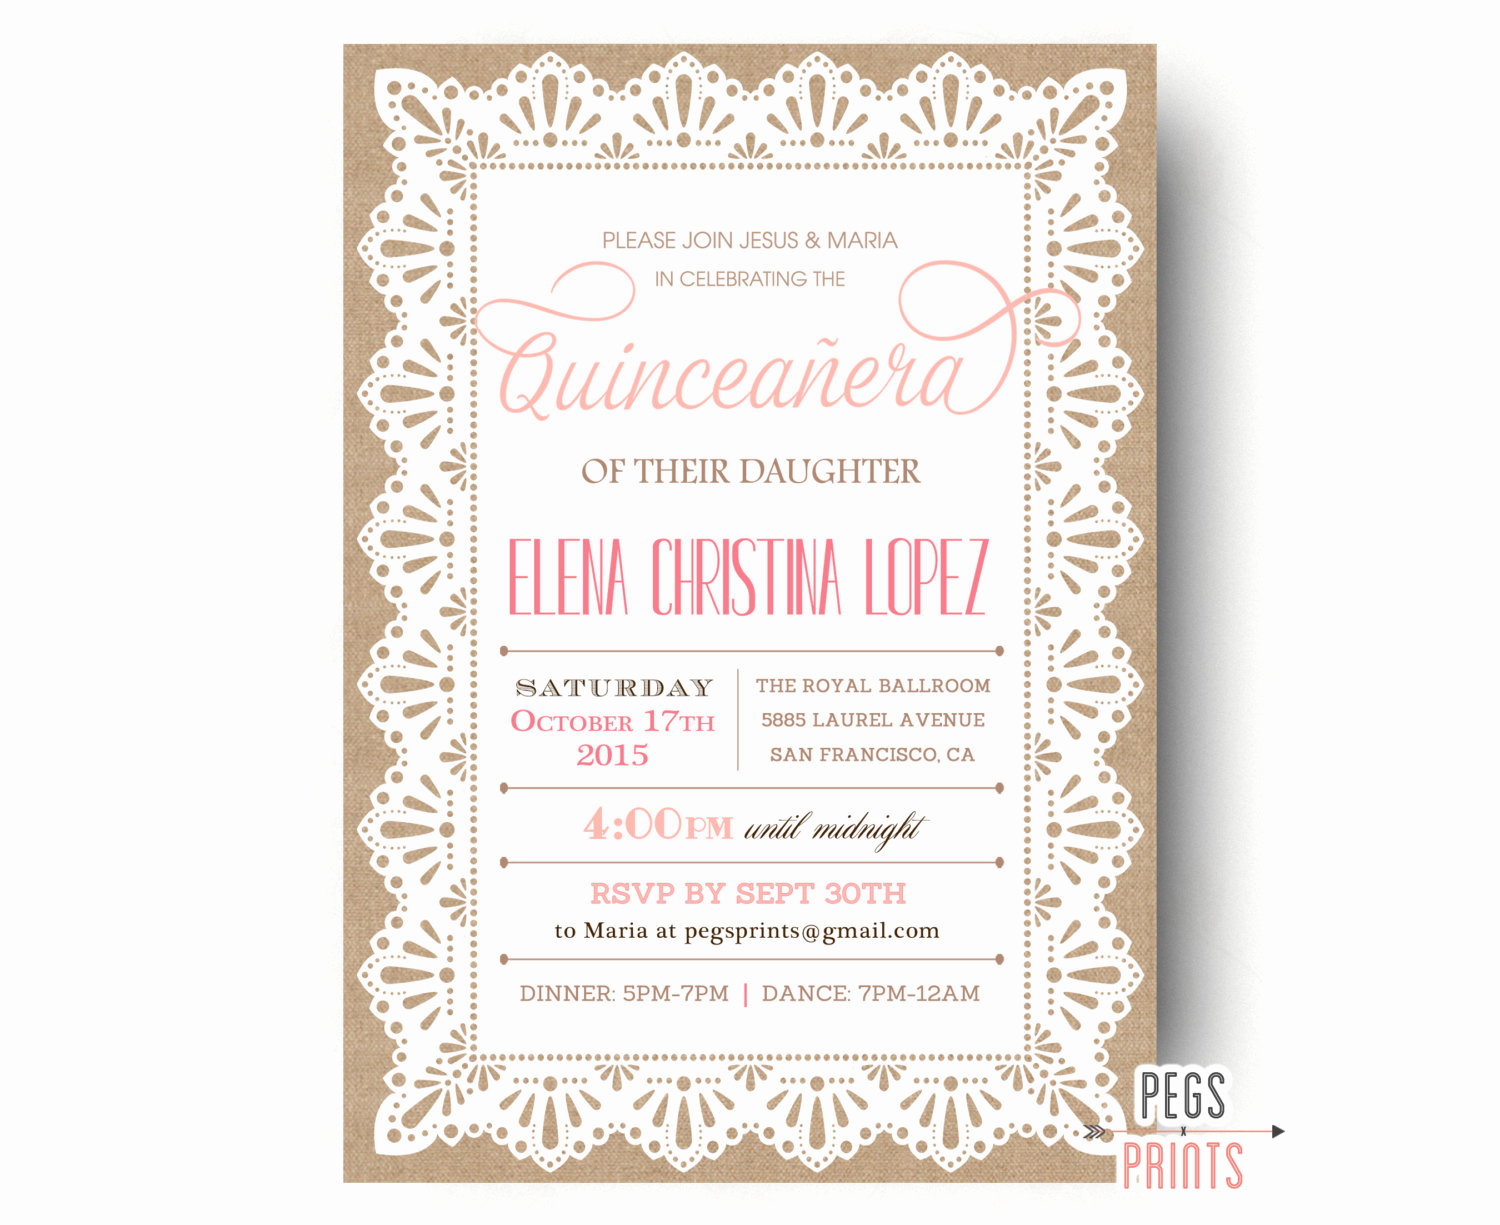 Spanish Quinceanera Invitation Wording Elegant Burlap and Lace Quinceanera Invitation Quinceanera Invites